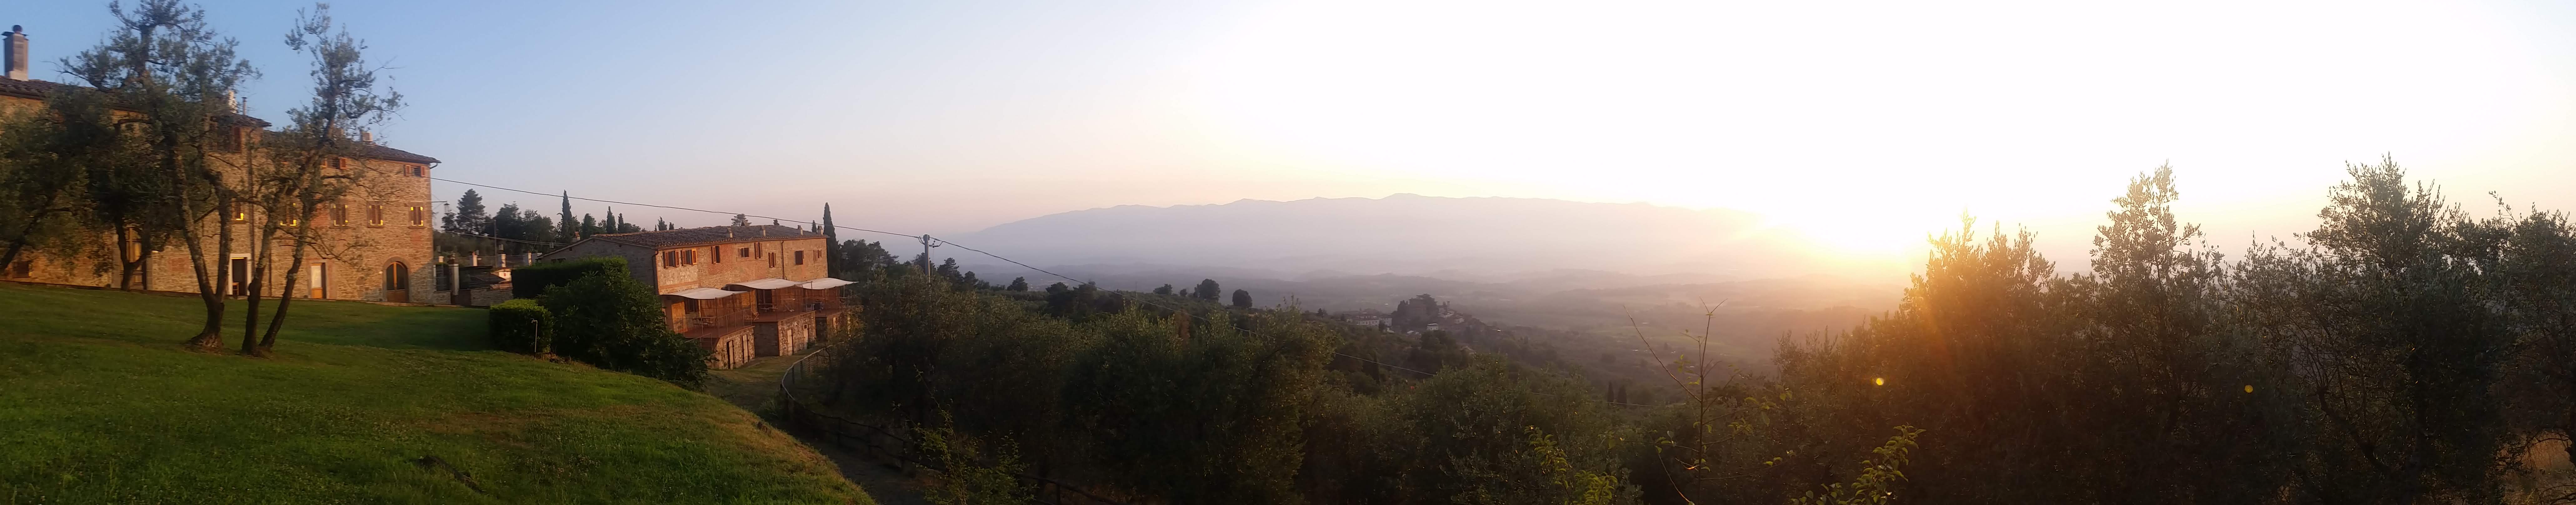 tuscany view - panorama